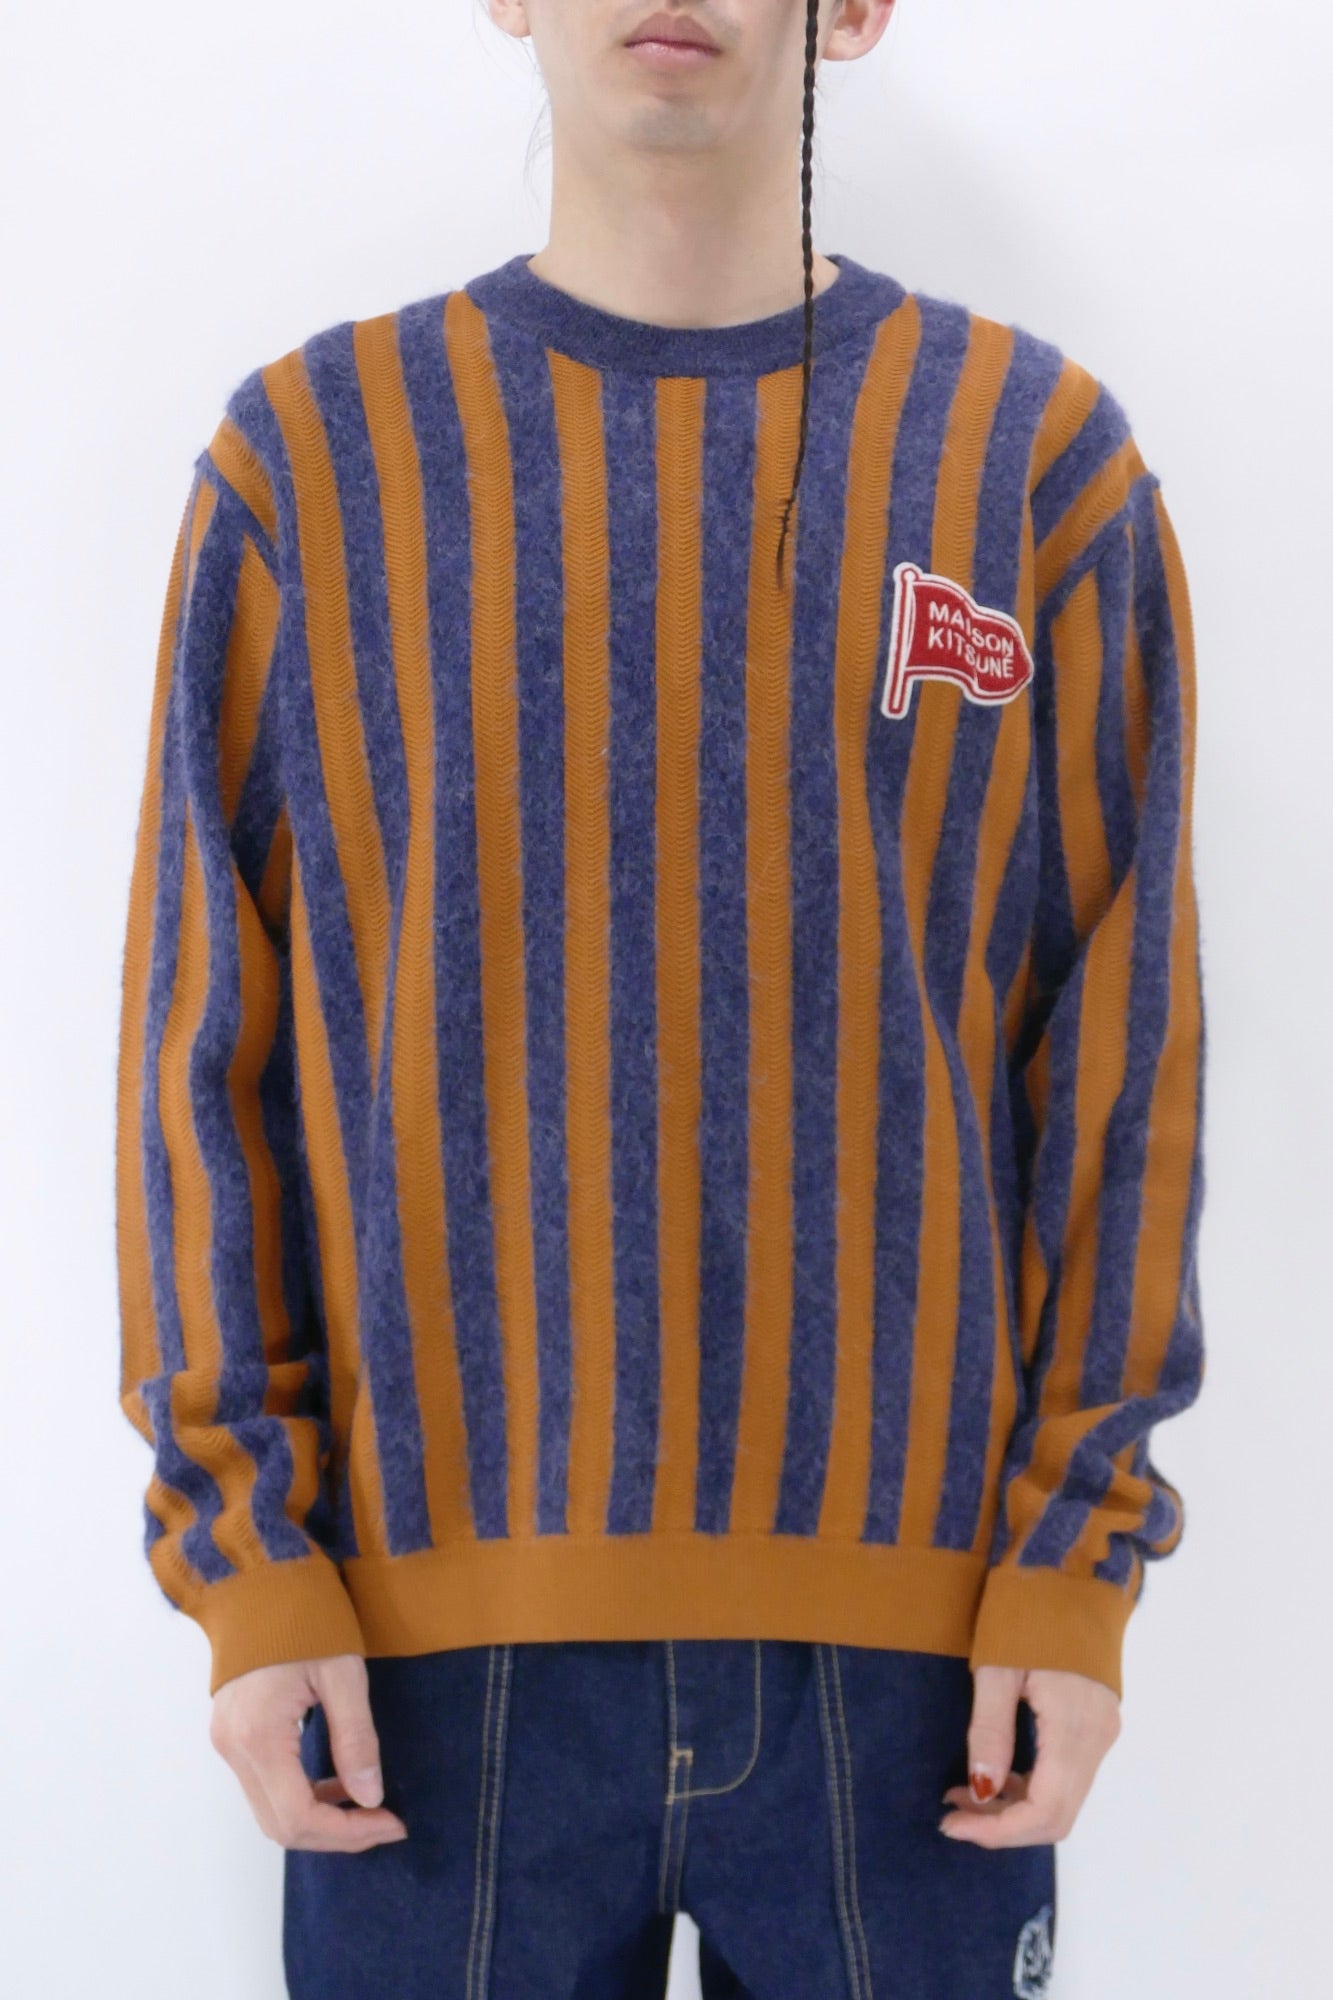 Maison Kitsuné Striped Comfort Sweater - Blue/Yellow - Due West